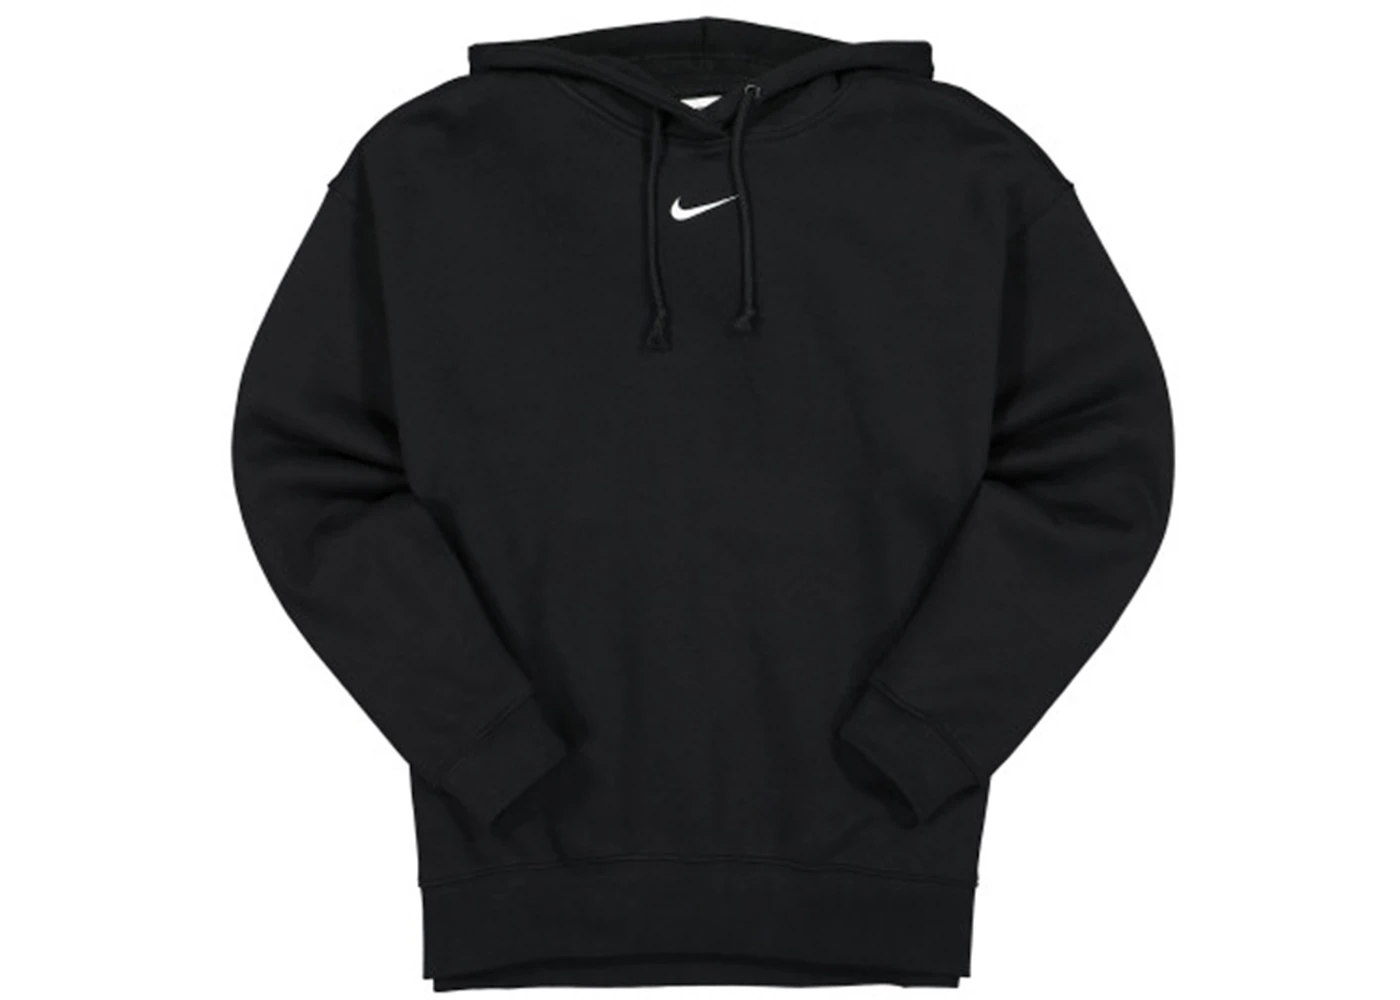 Nike Women's Oversized Fleece Hoodie Black/White - SS22 - US